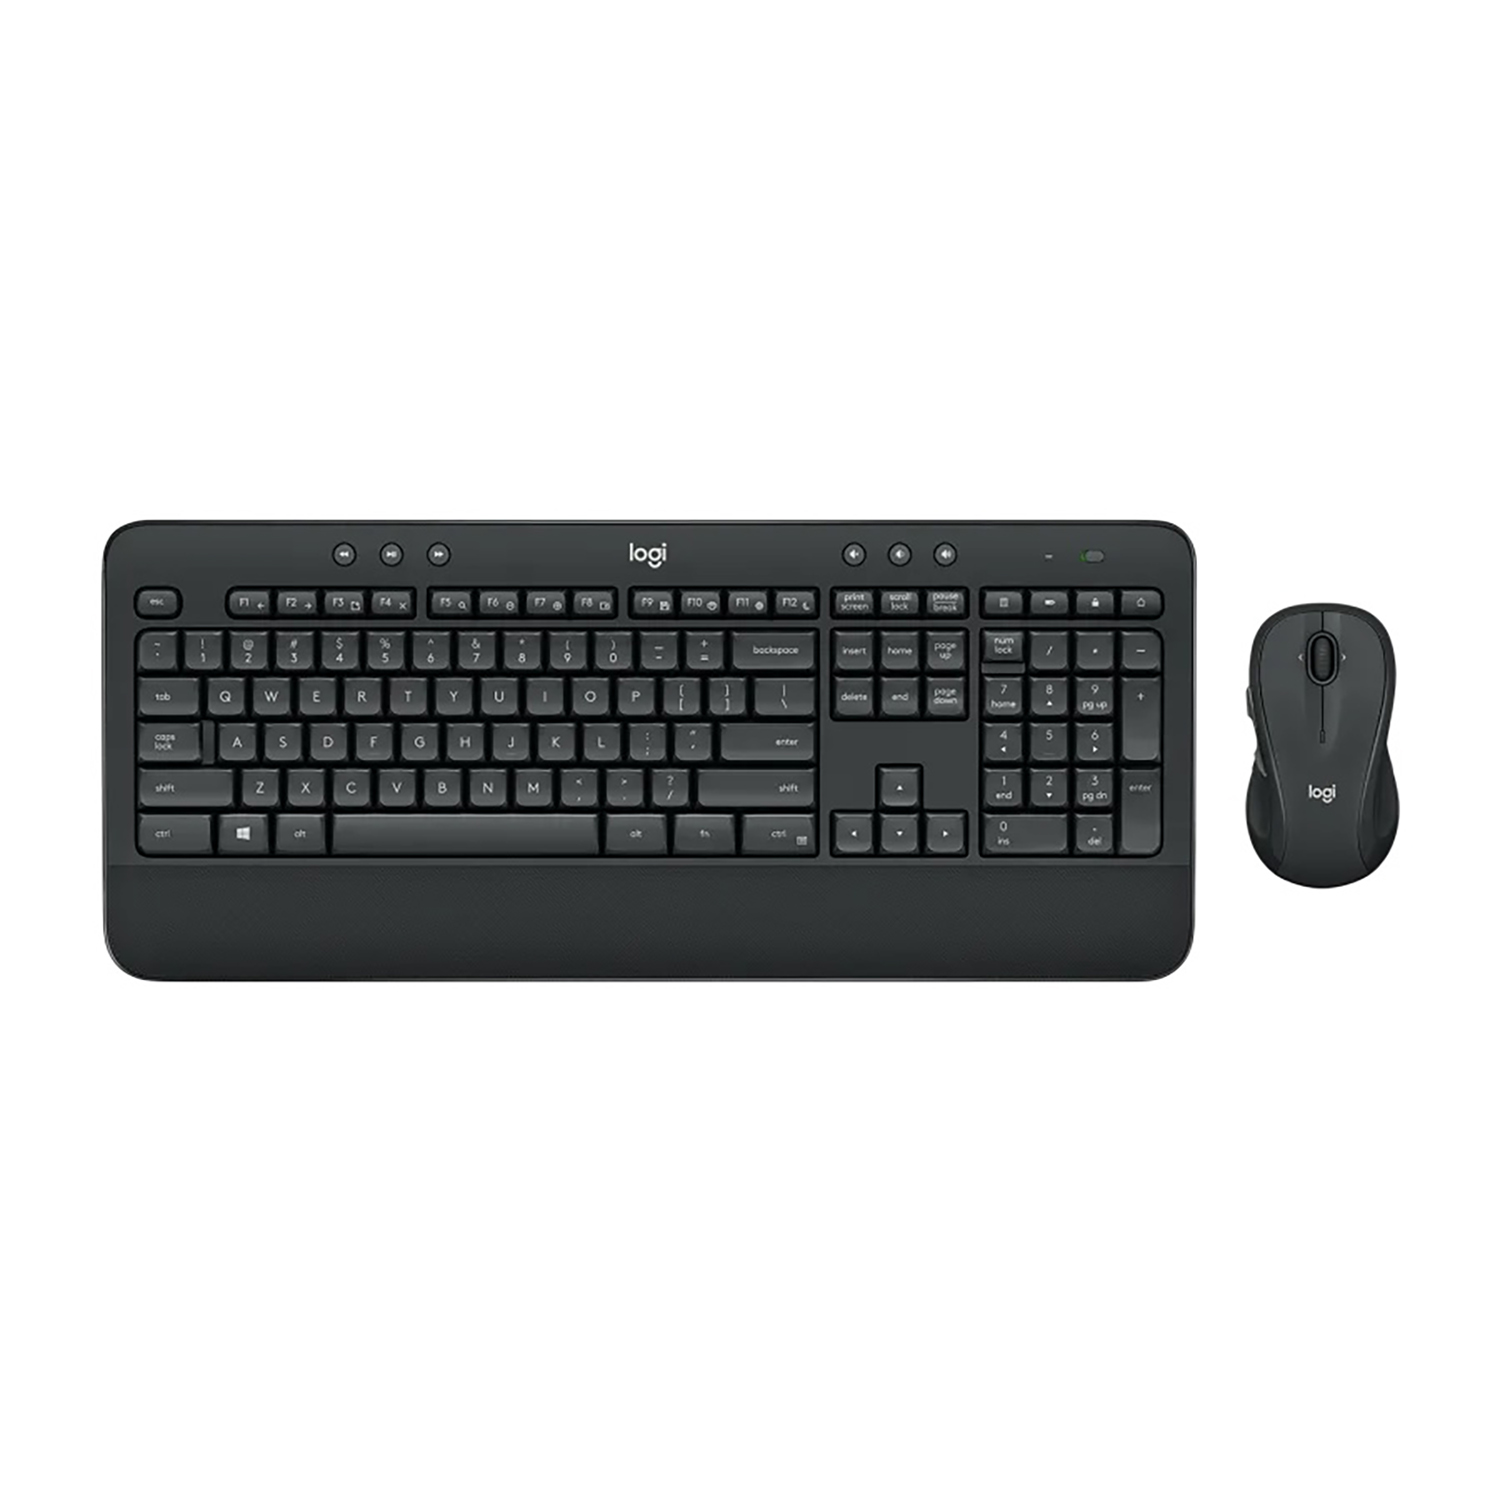 Logitech MK545 Advanced Wireless Keyboard and Mouse